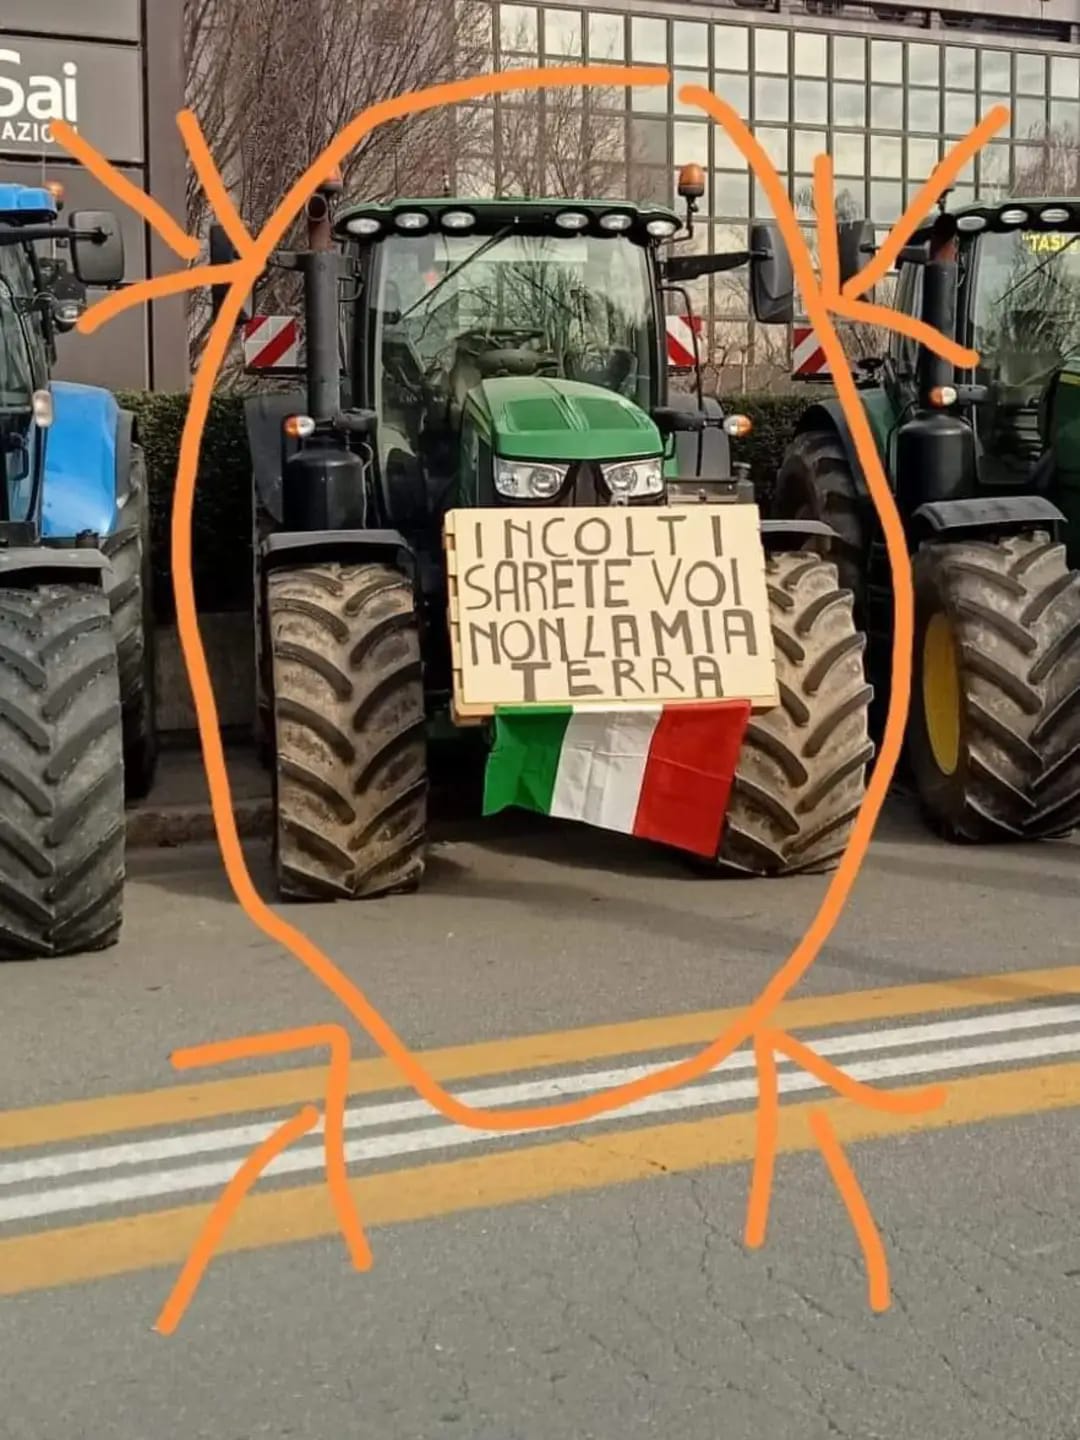 Proteste agricoltori, cartello: 'incolti sarete voi non la mia terra'